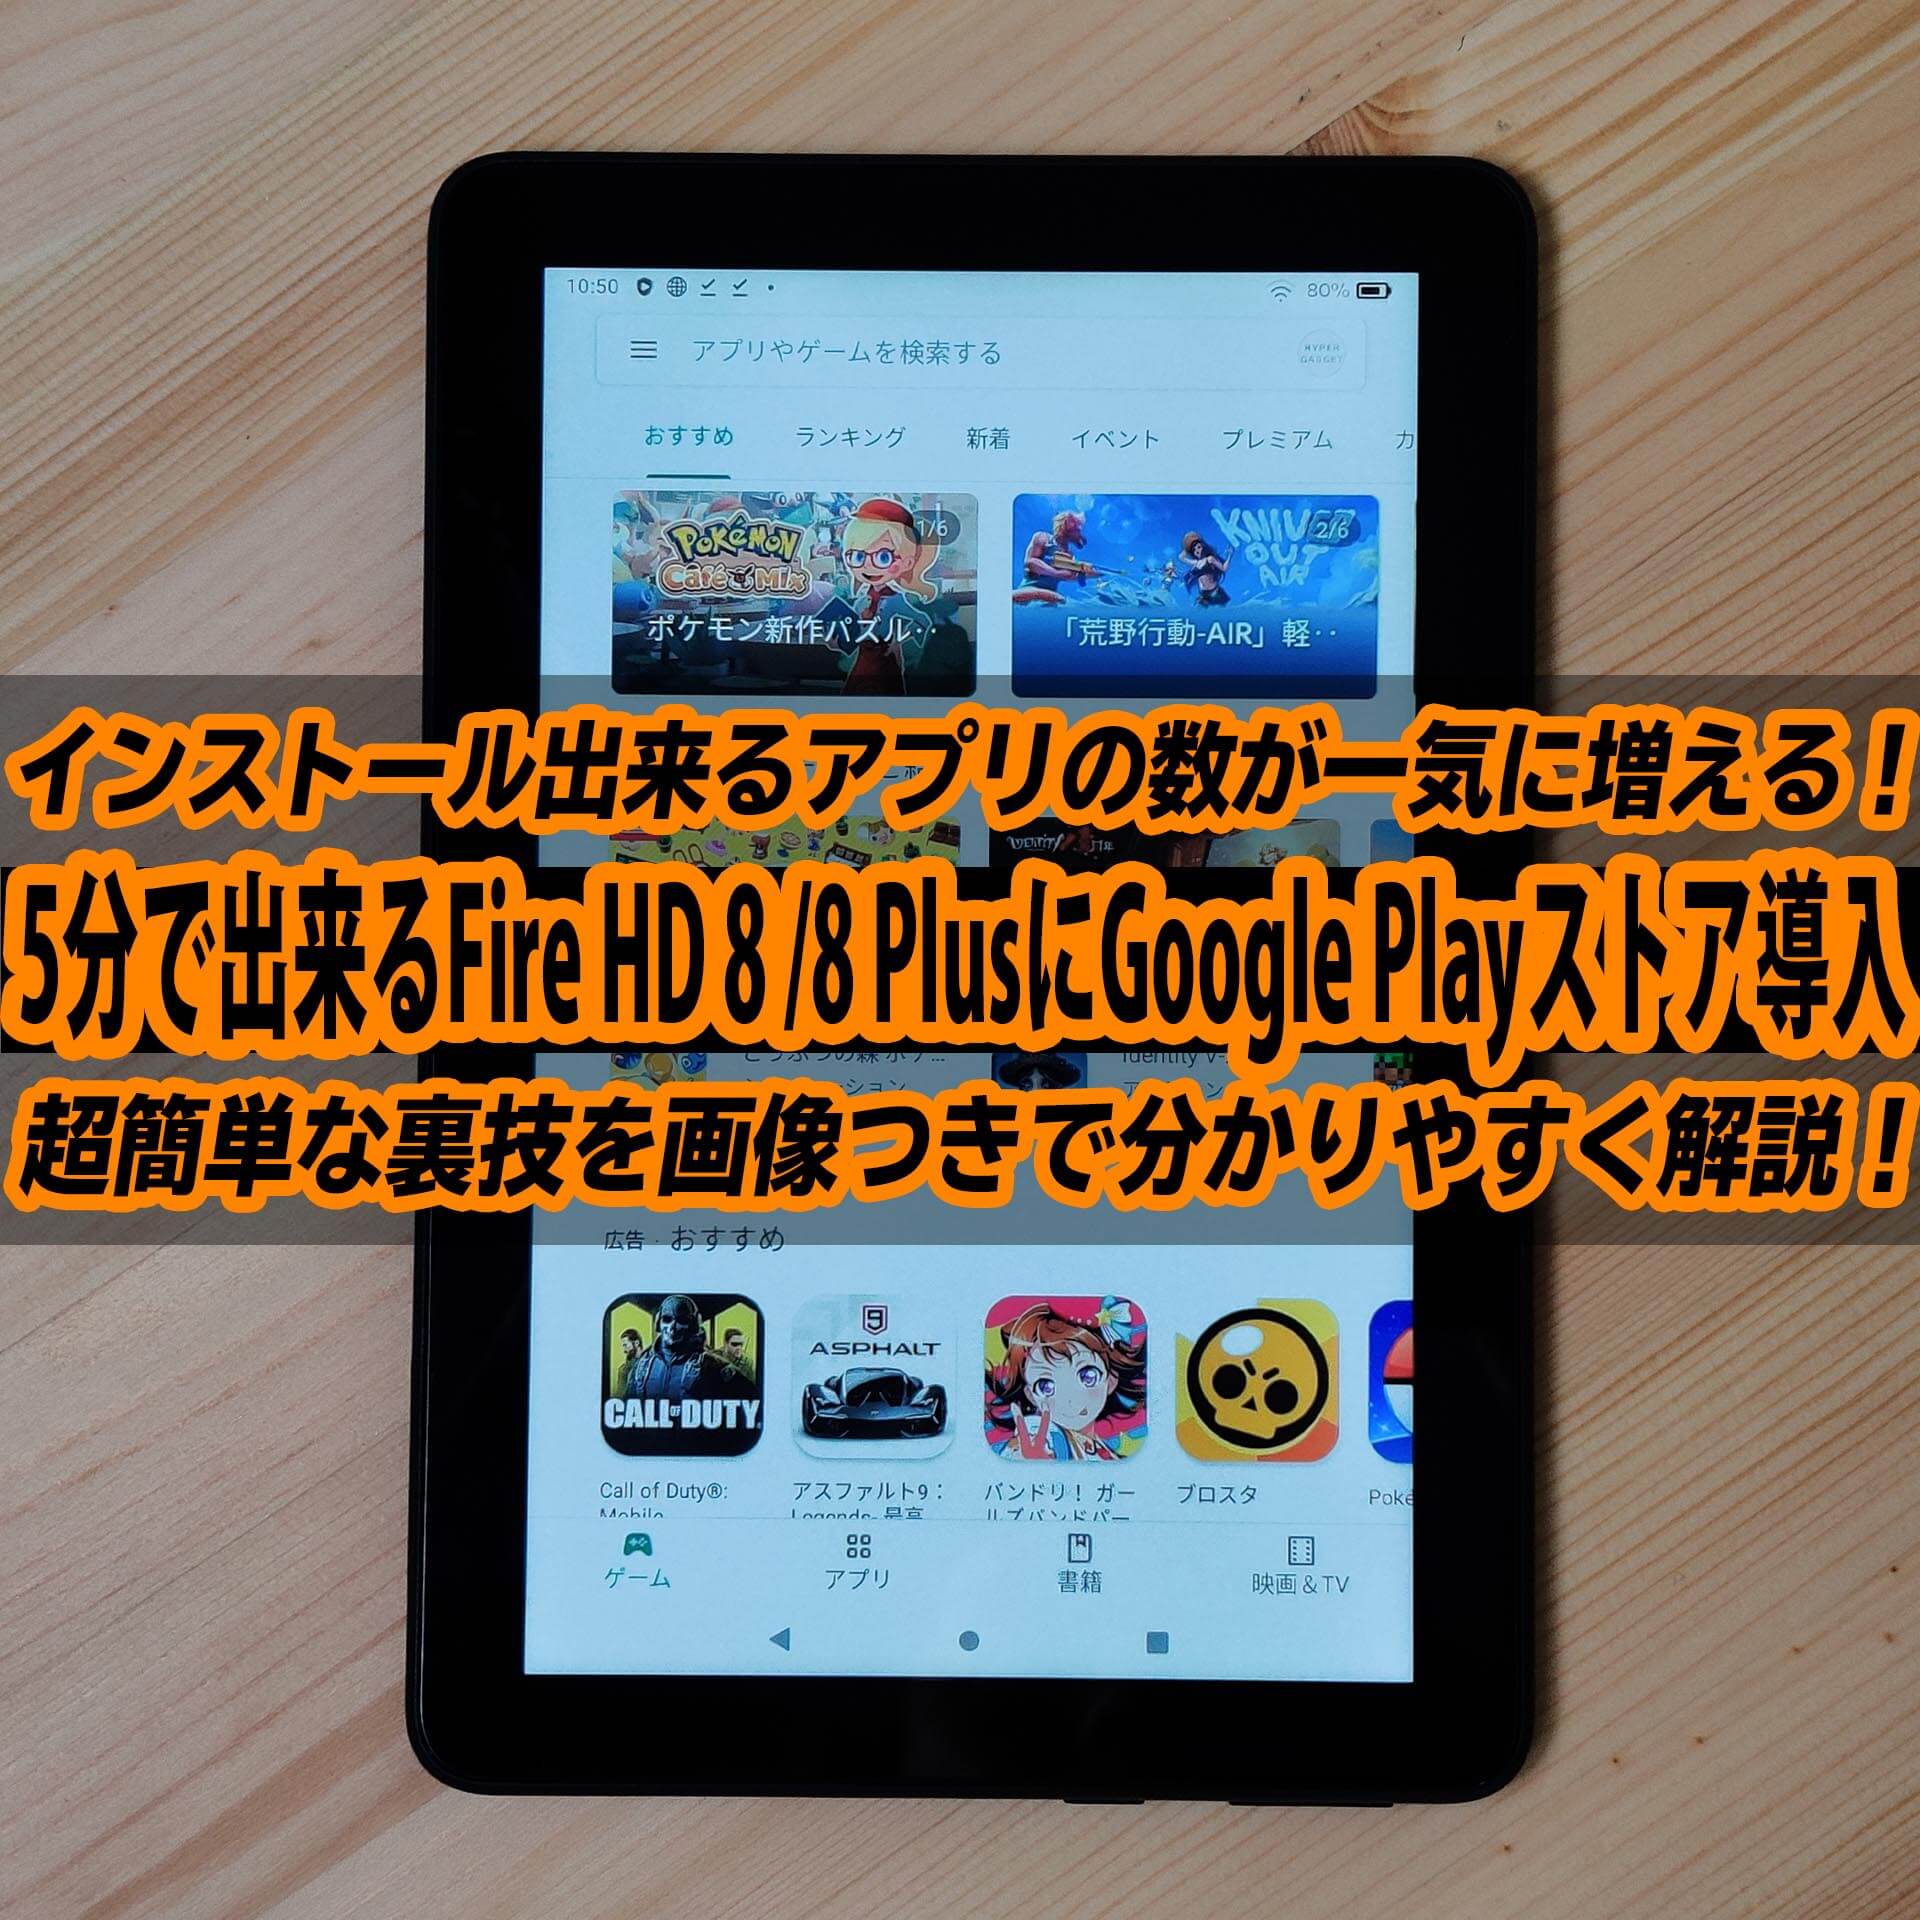 Fire HD 8 Plus/8にGoogle Play ストアを5分で入れる超簡単な方法 